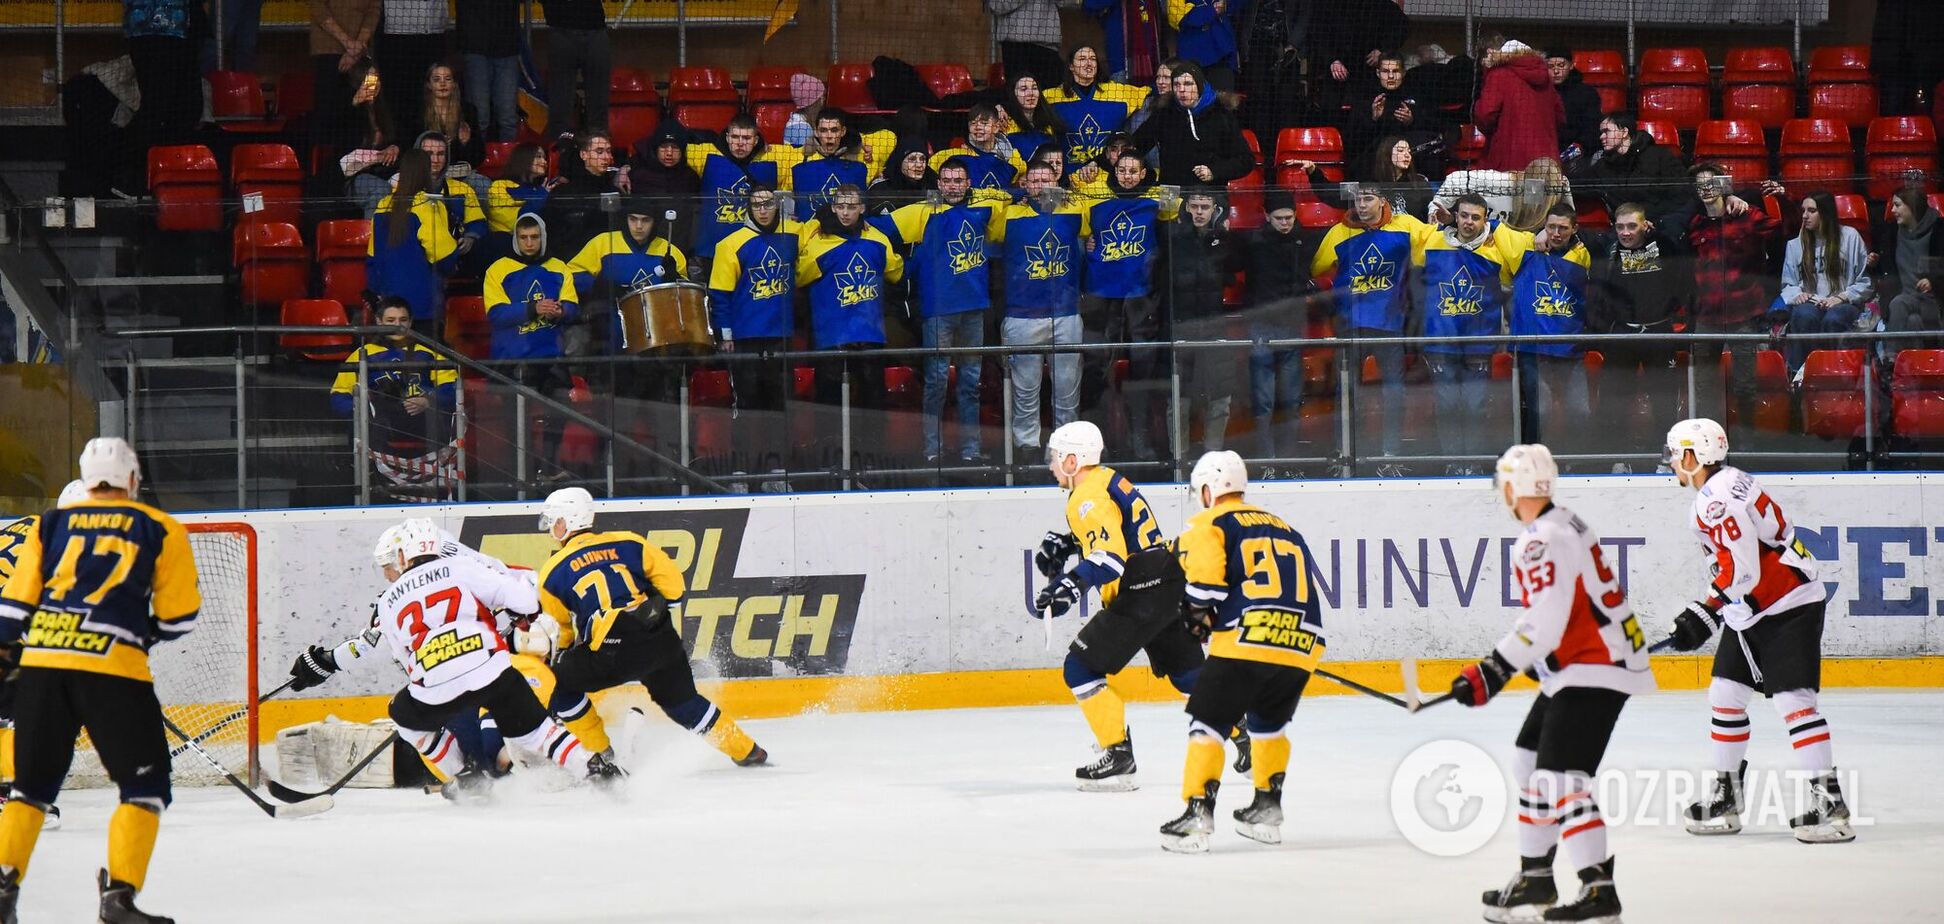 Рекорд сезона в украинском хоккее! Столько зрителей на трибунах не было уже давно